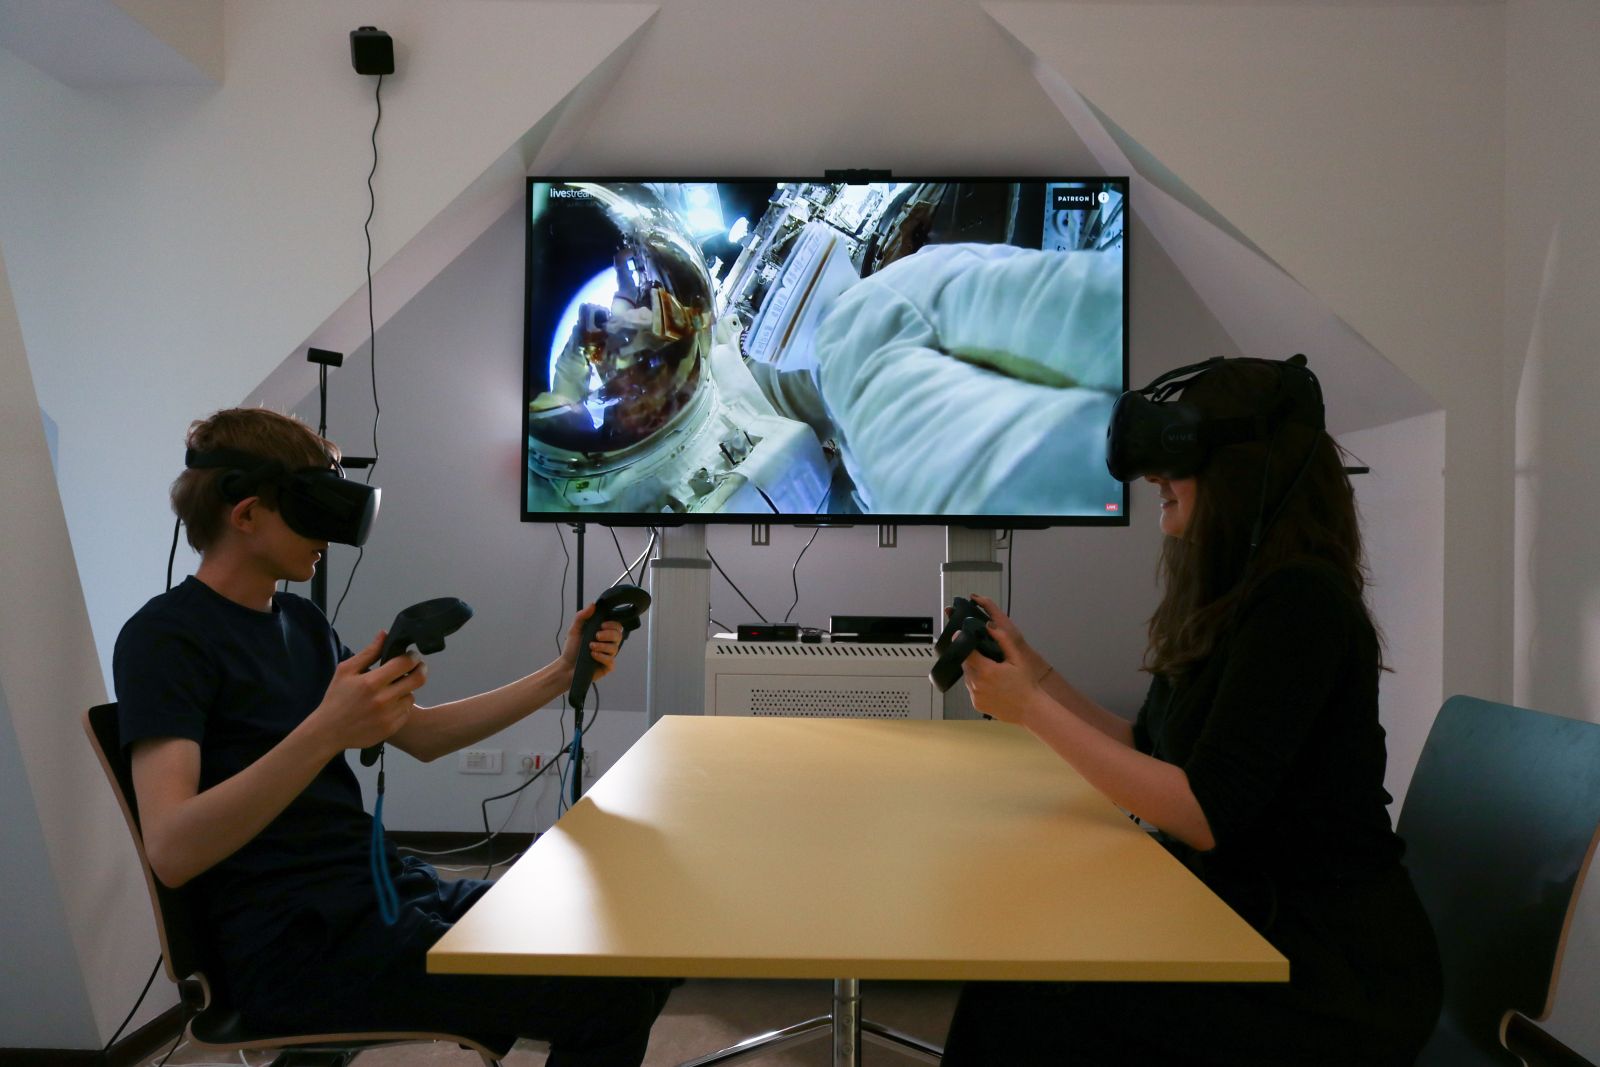 Dwie osoby w okularach VR siedzą przy stole, w rękach trzymają specjalne kontrolery, za nimi na ekranie wyświetla się kadr z kosmonautą szybującym w kosmosie.